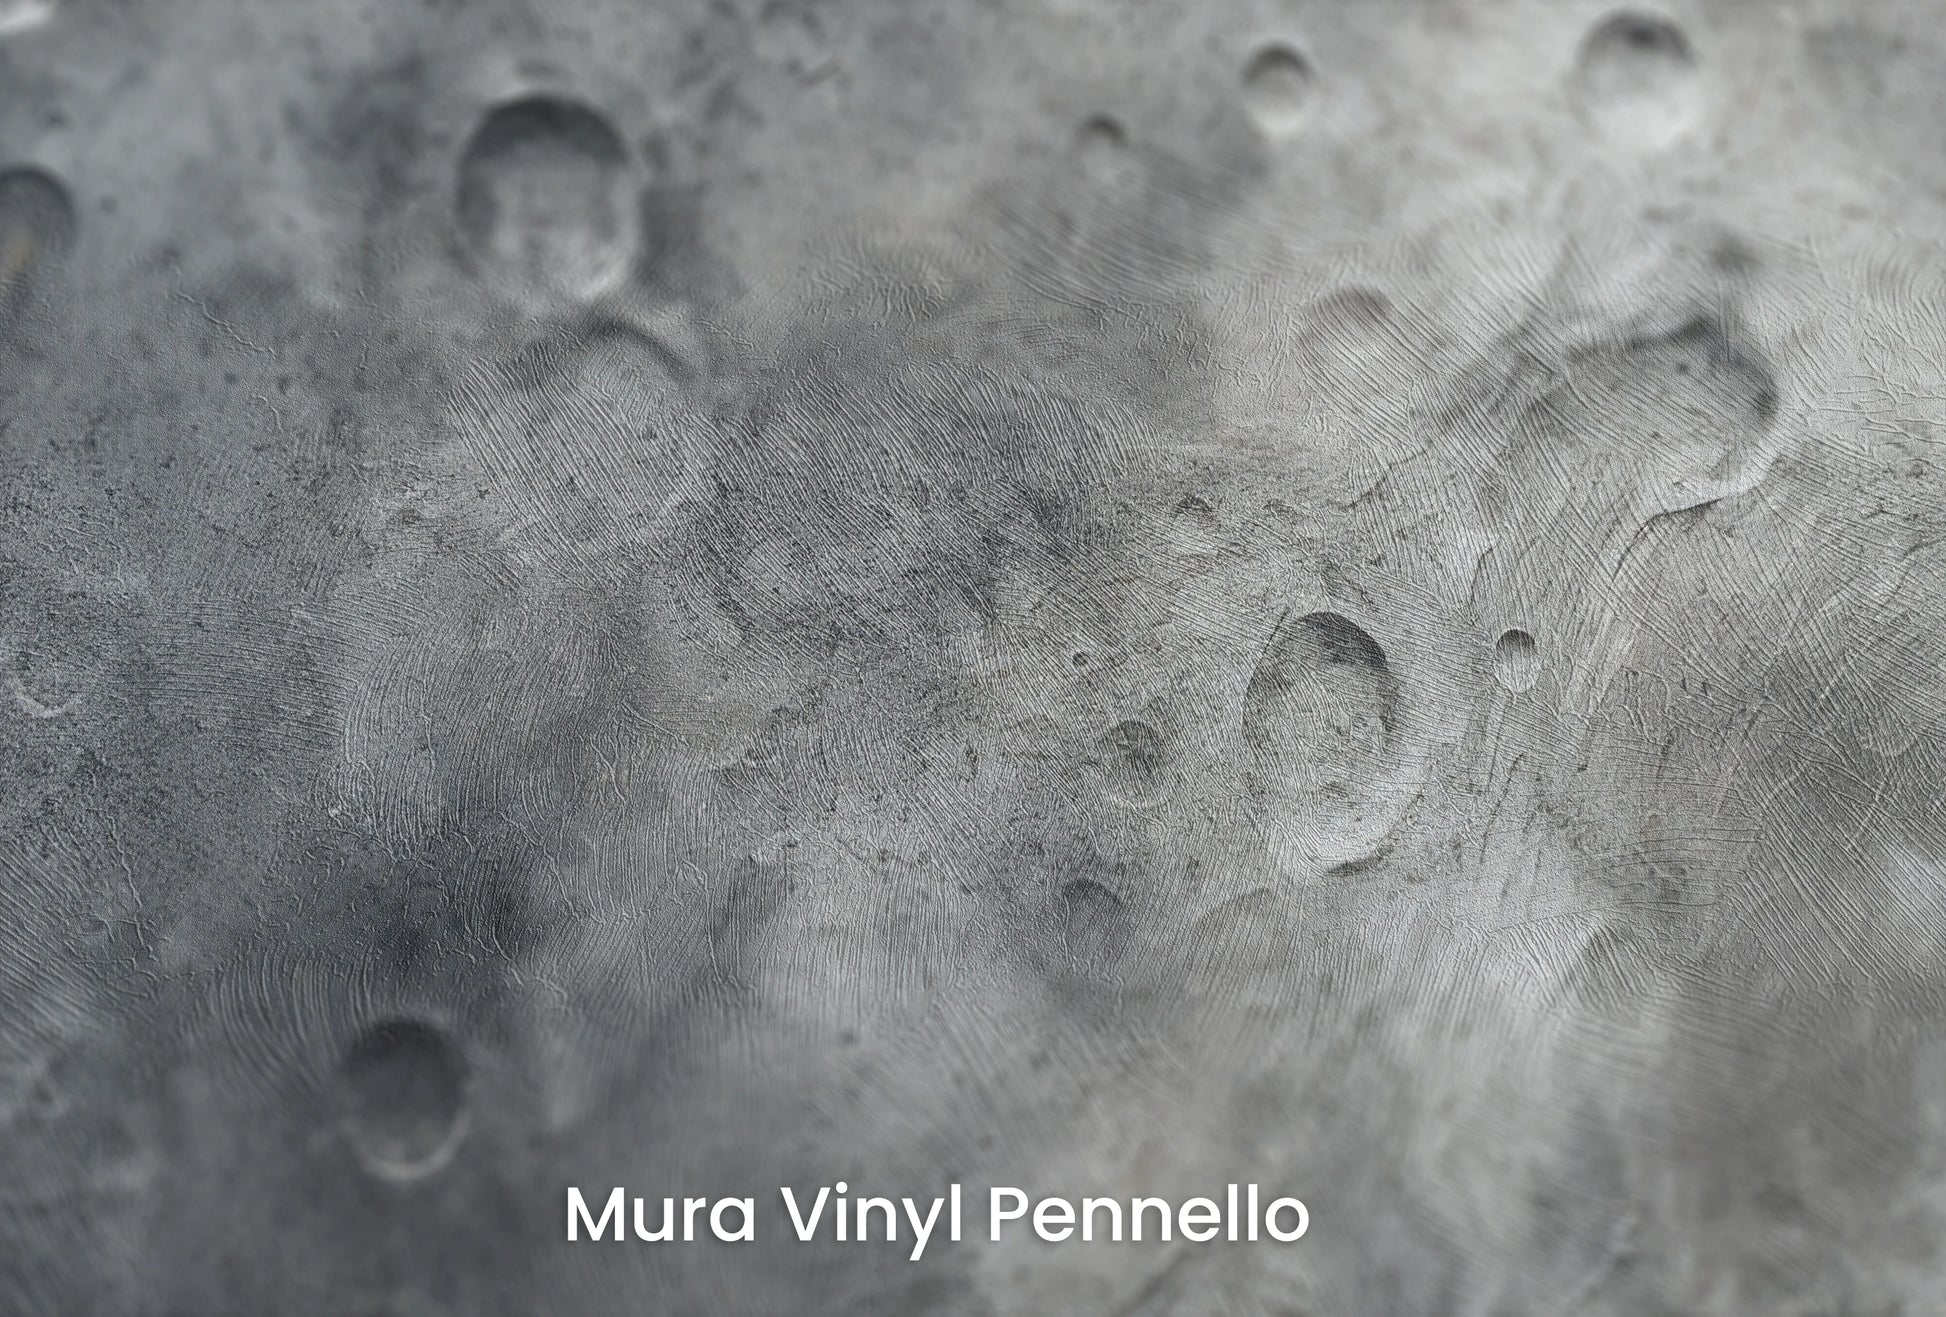 Zbliżenie na artystyczną fototapetę o nazwie Lunar Desert na podłożu Mura Vinyl Pennello - faktura pociągnięć pędzla malarskiego.